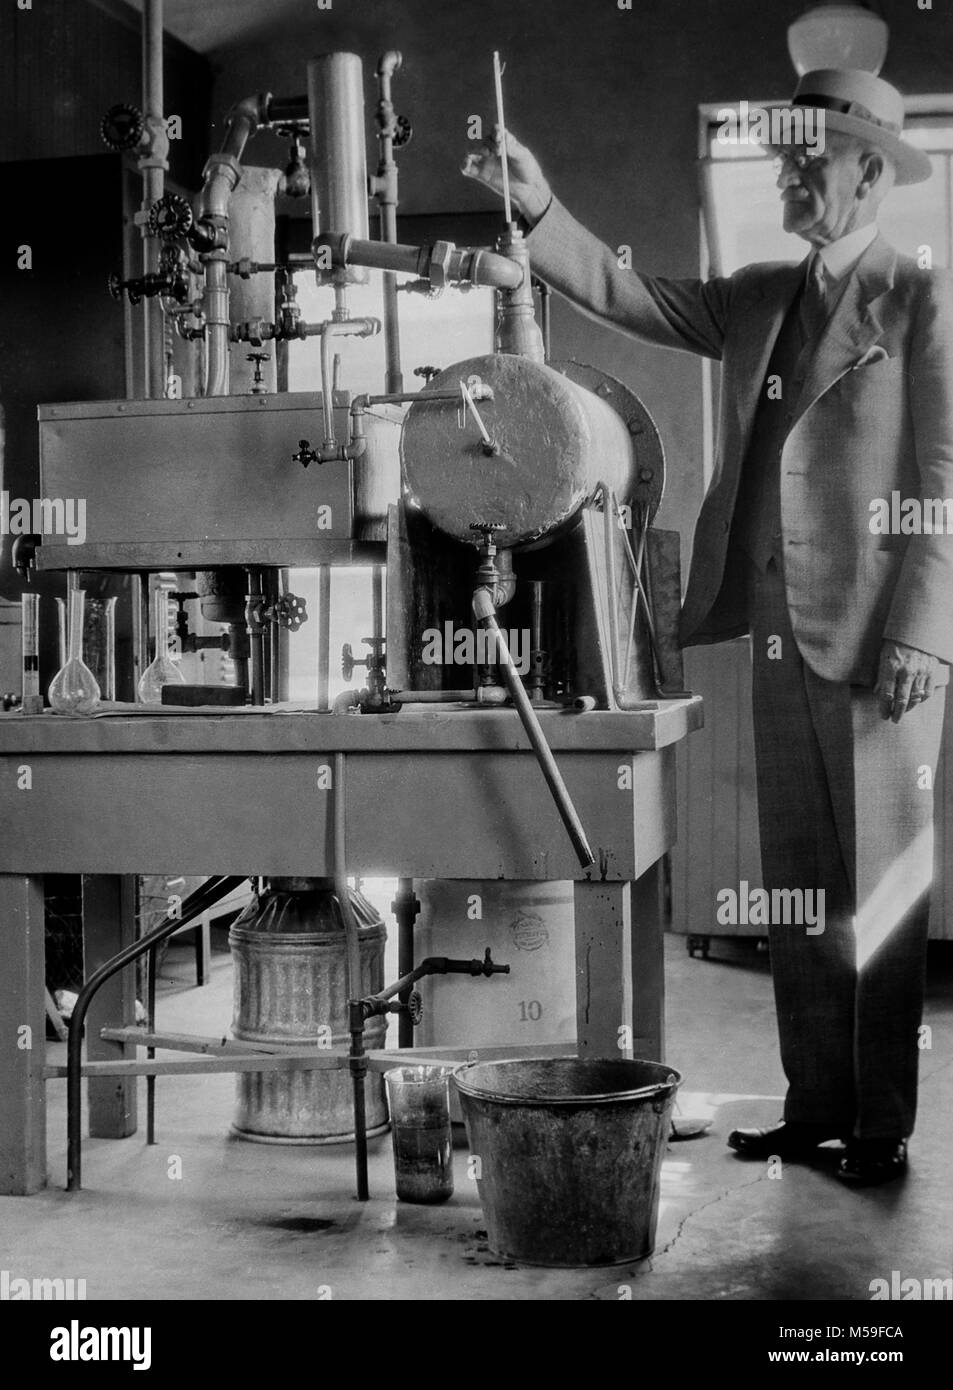 Un homme mûr et son expérience scientifique dans le laboratoire, ca. L'année 1930. Banque D'Images